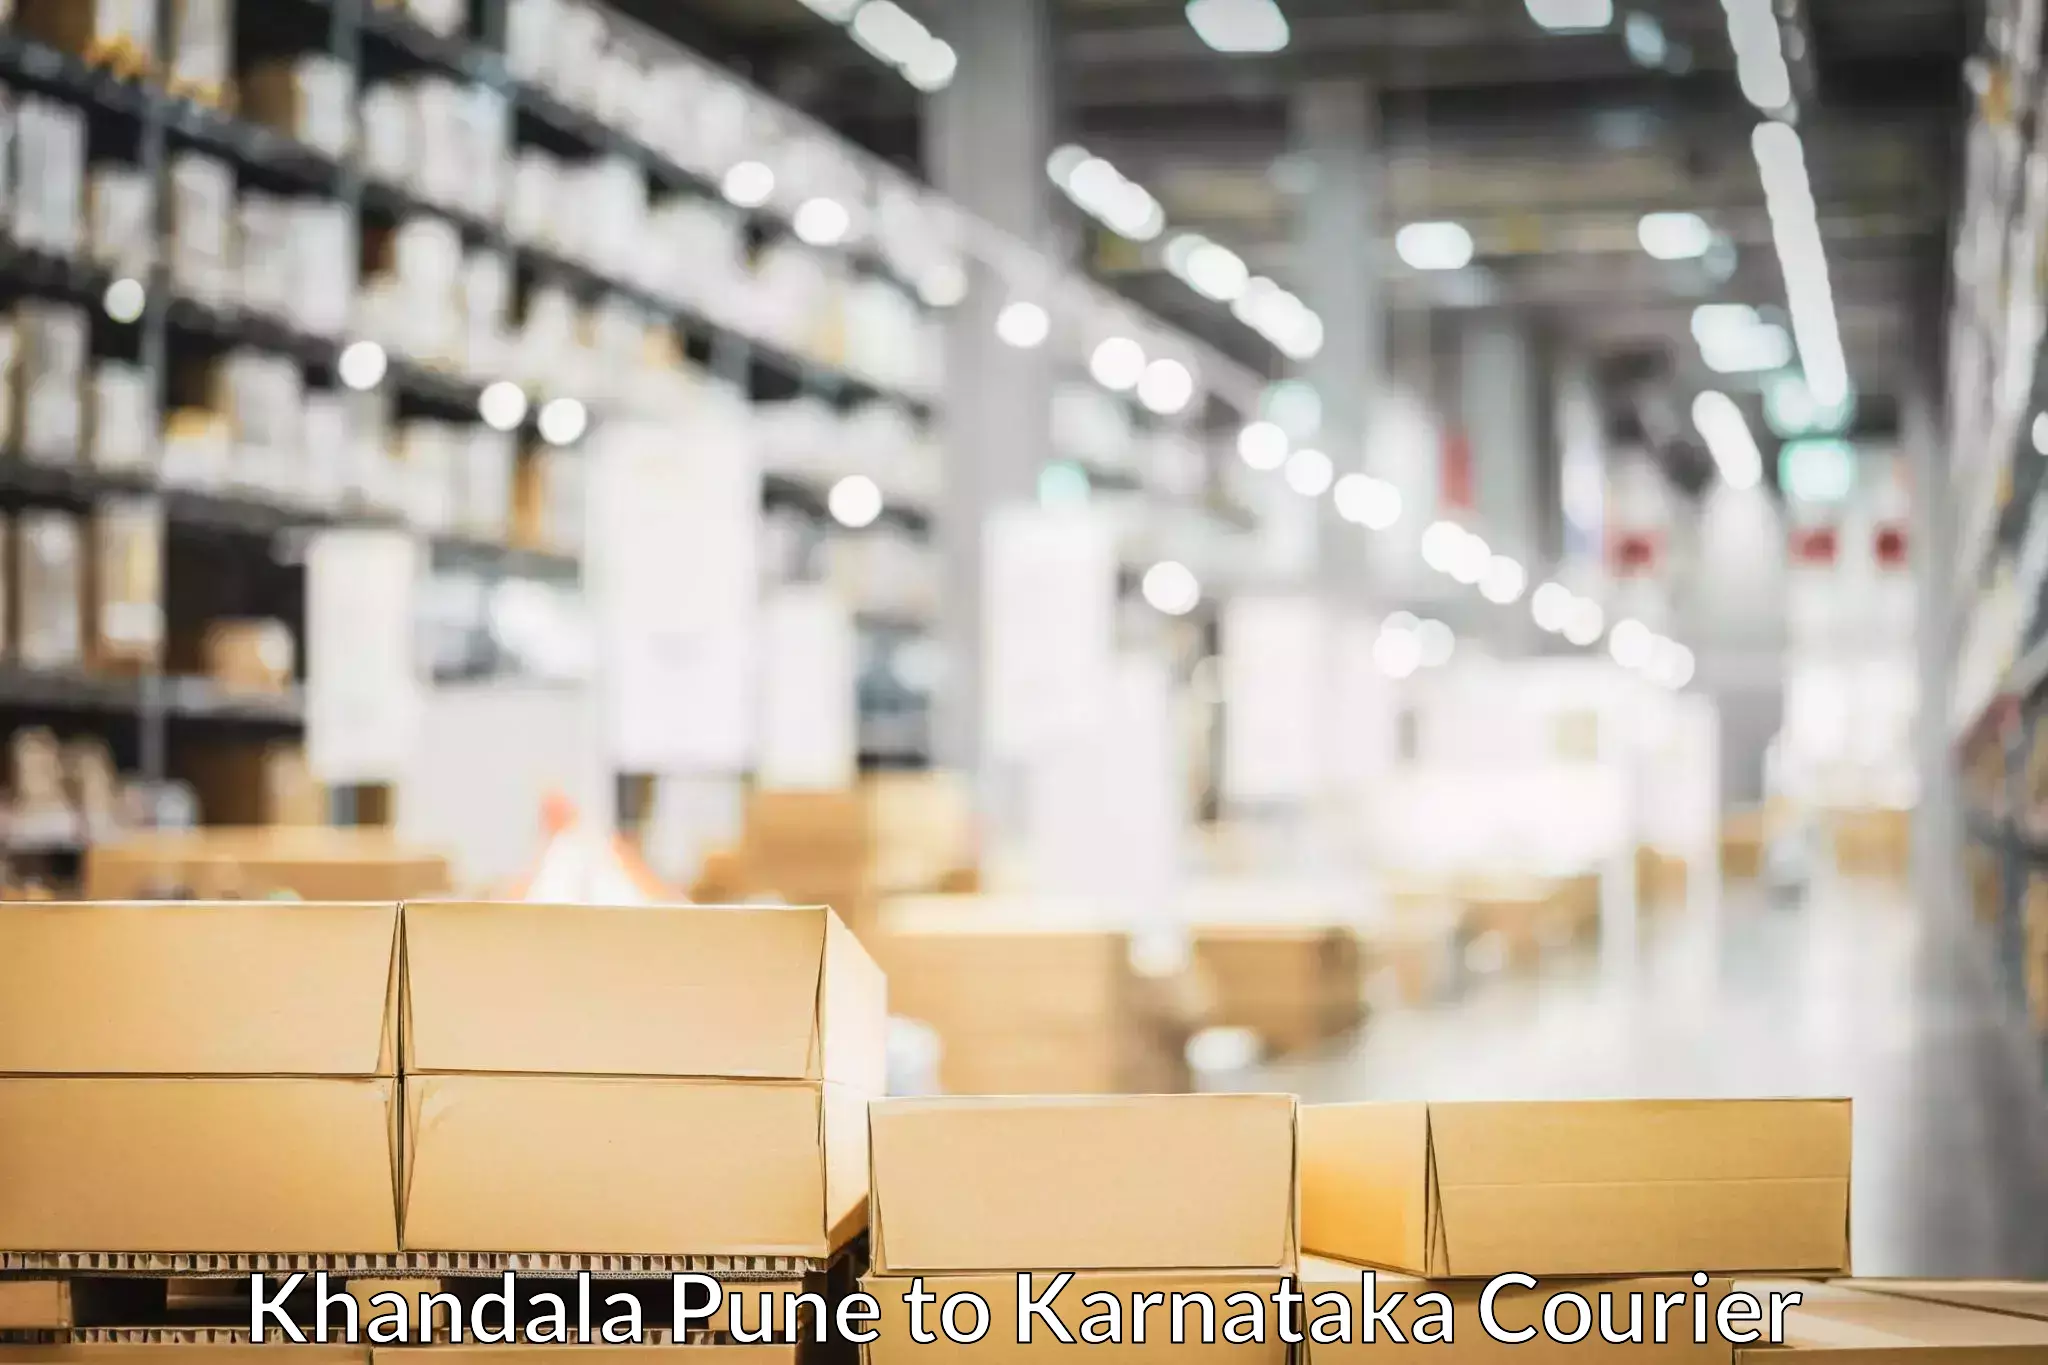 Furniture moving plans Khandala Pune to Karnataka